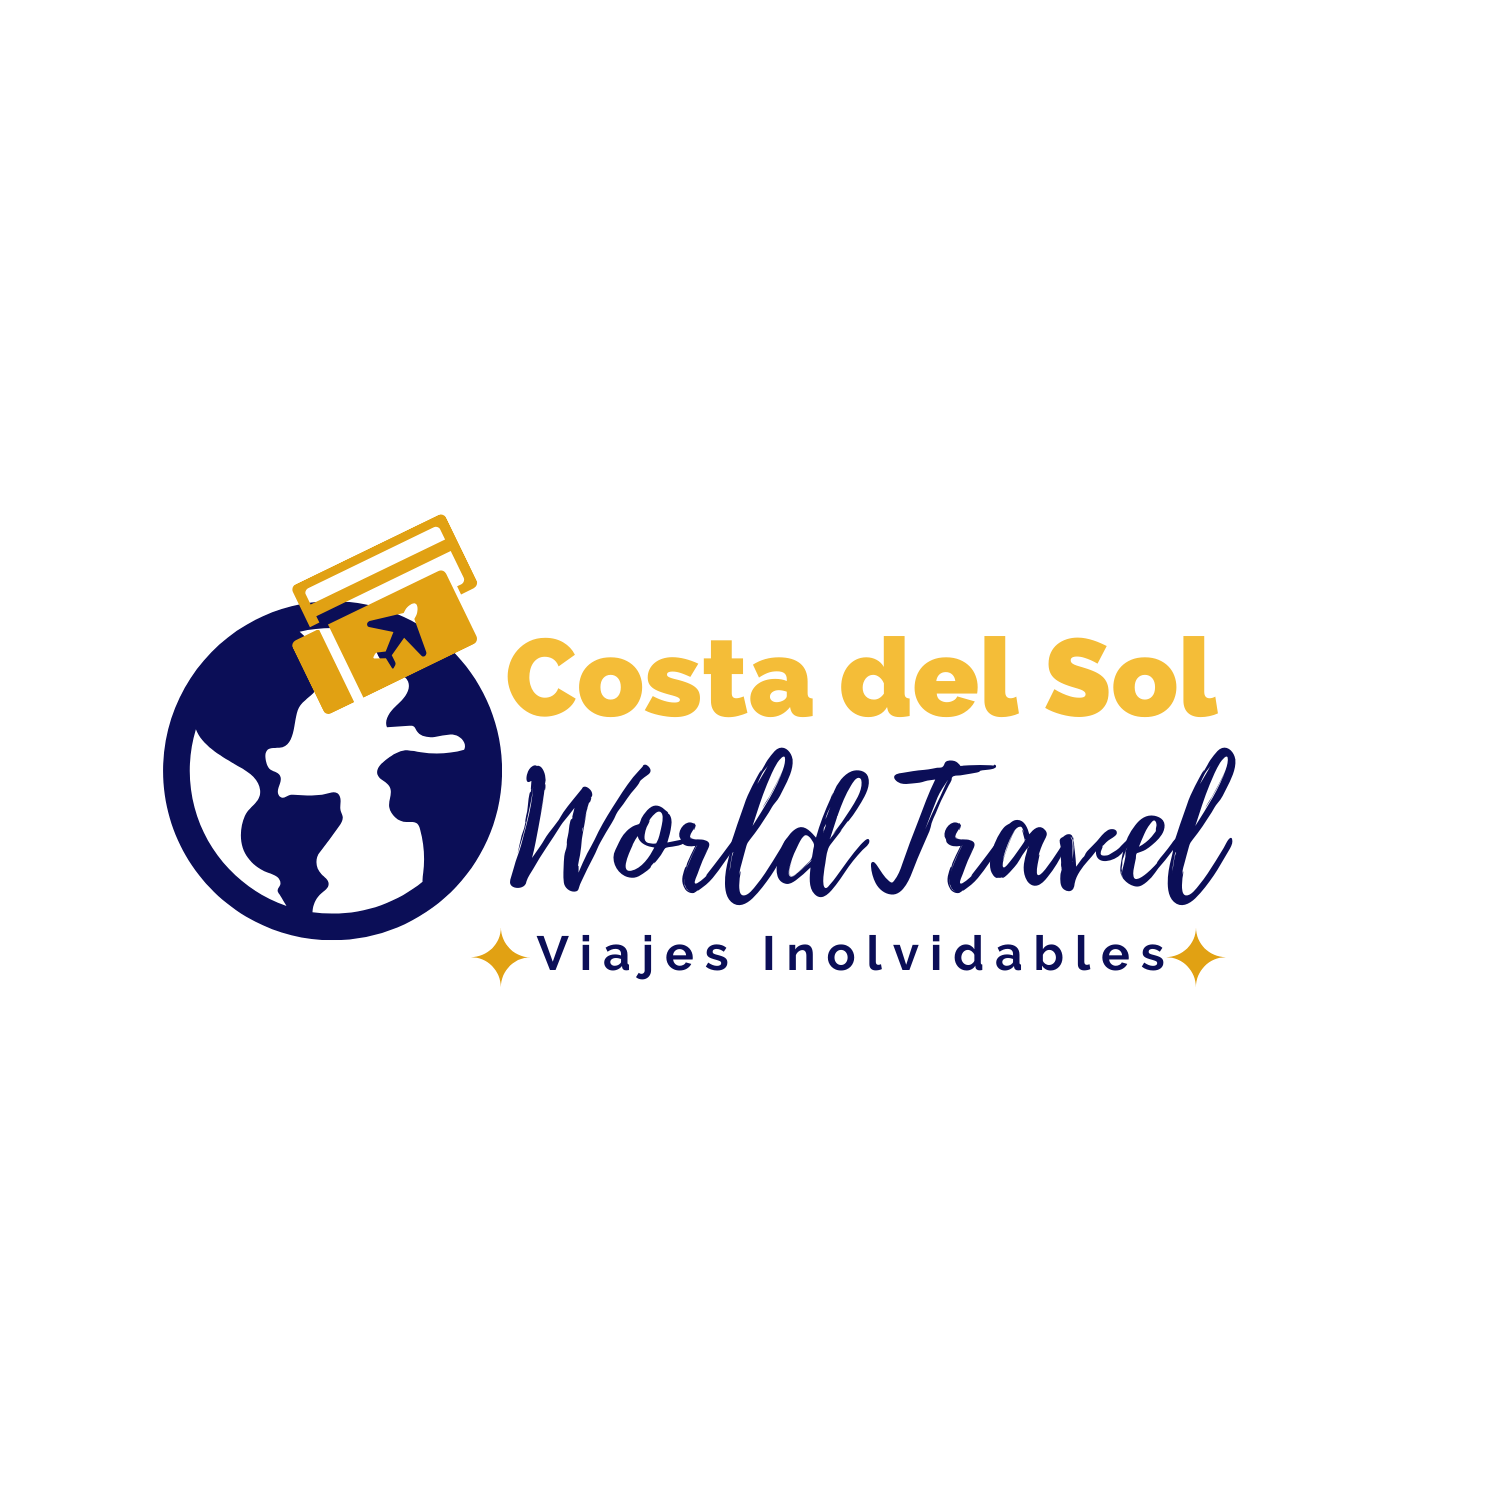 Costa Del Sol World Travels Website